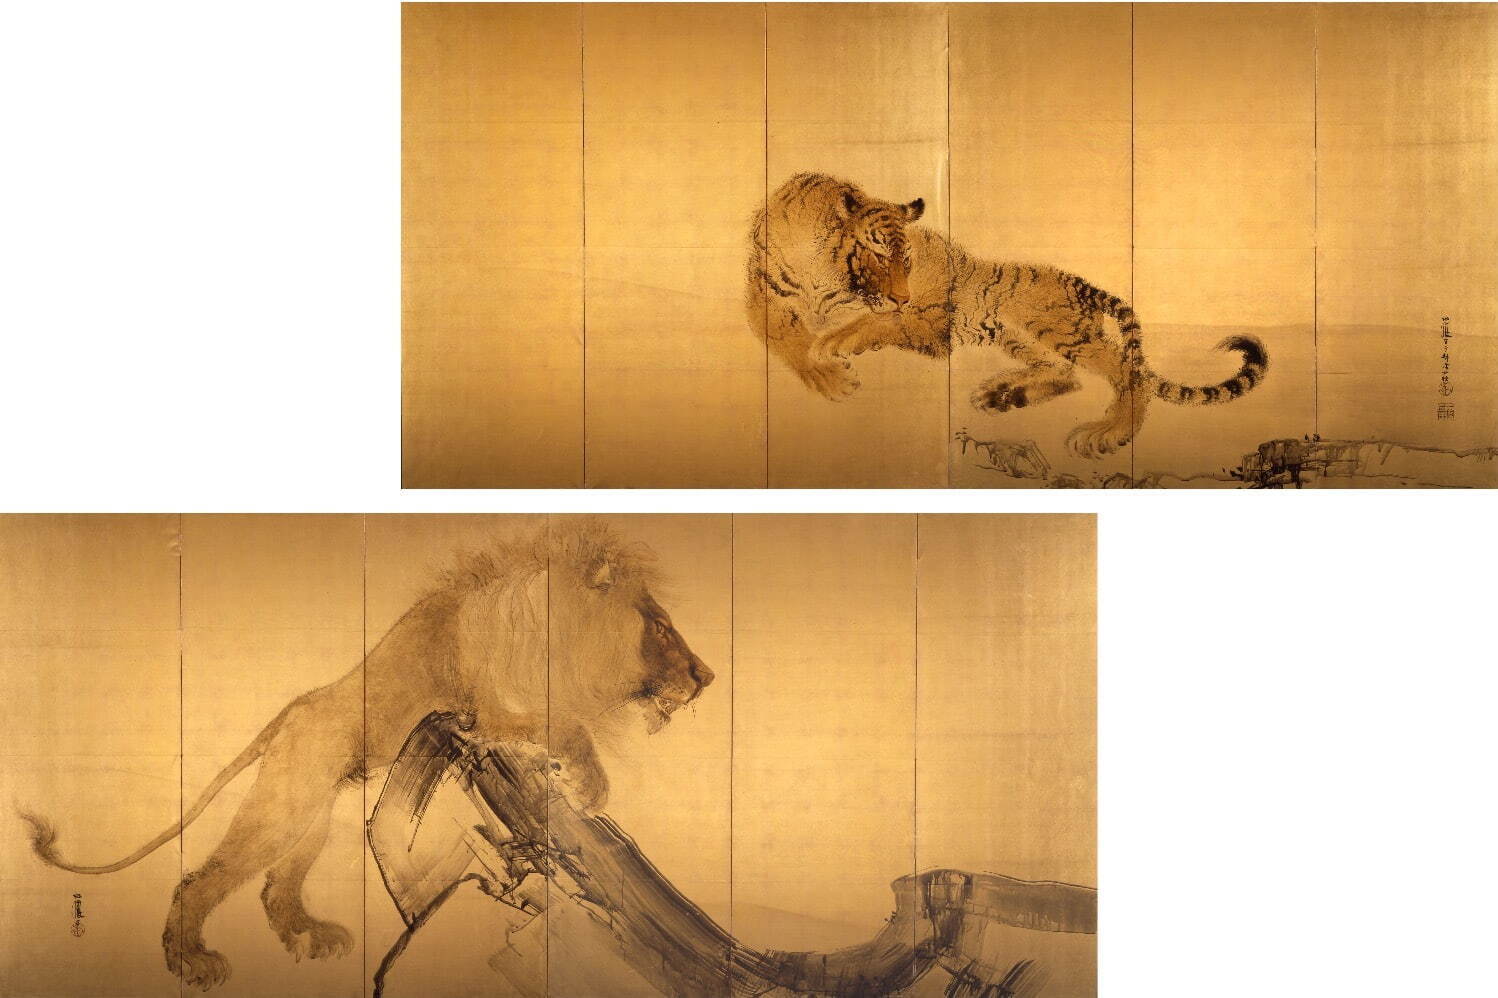 竹内栖鳳 《虎・獅子図》 1901年 三重県立美術館蔵
［後期展示］